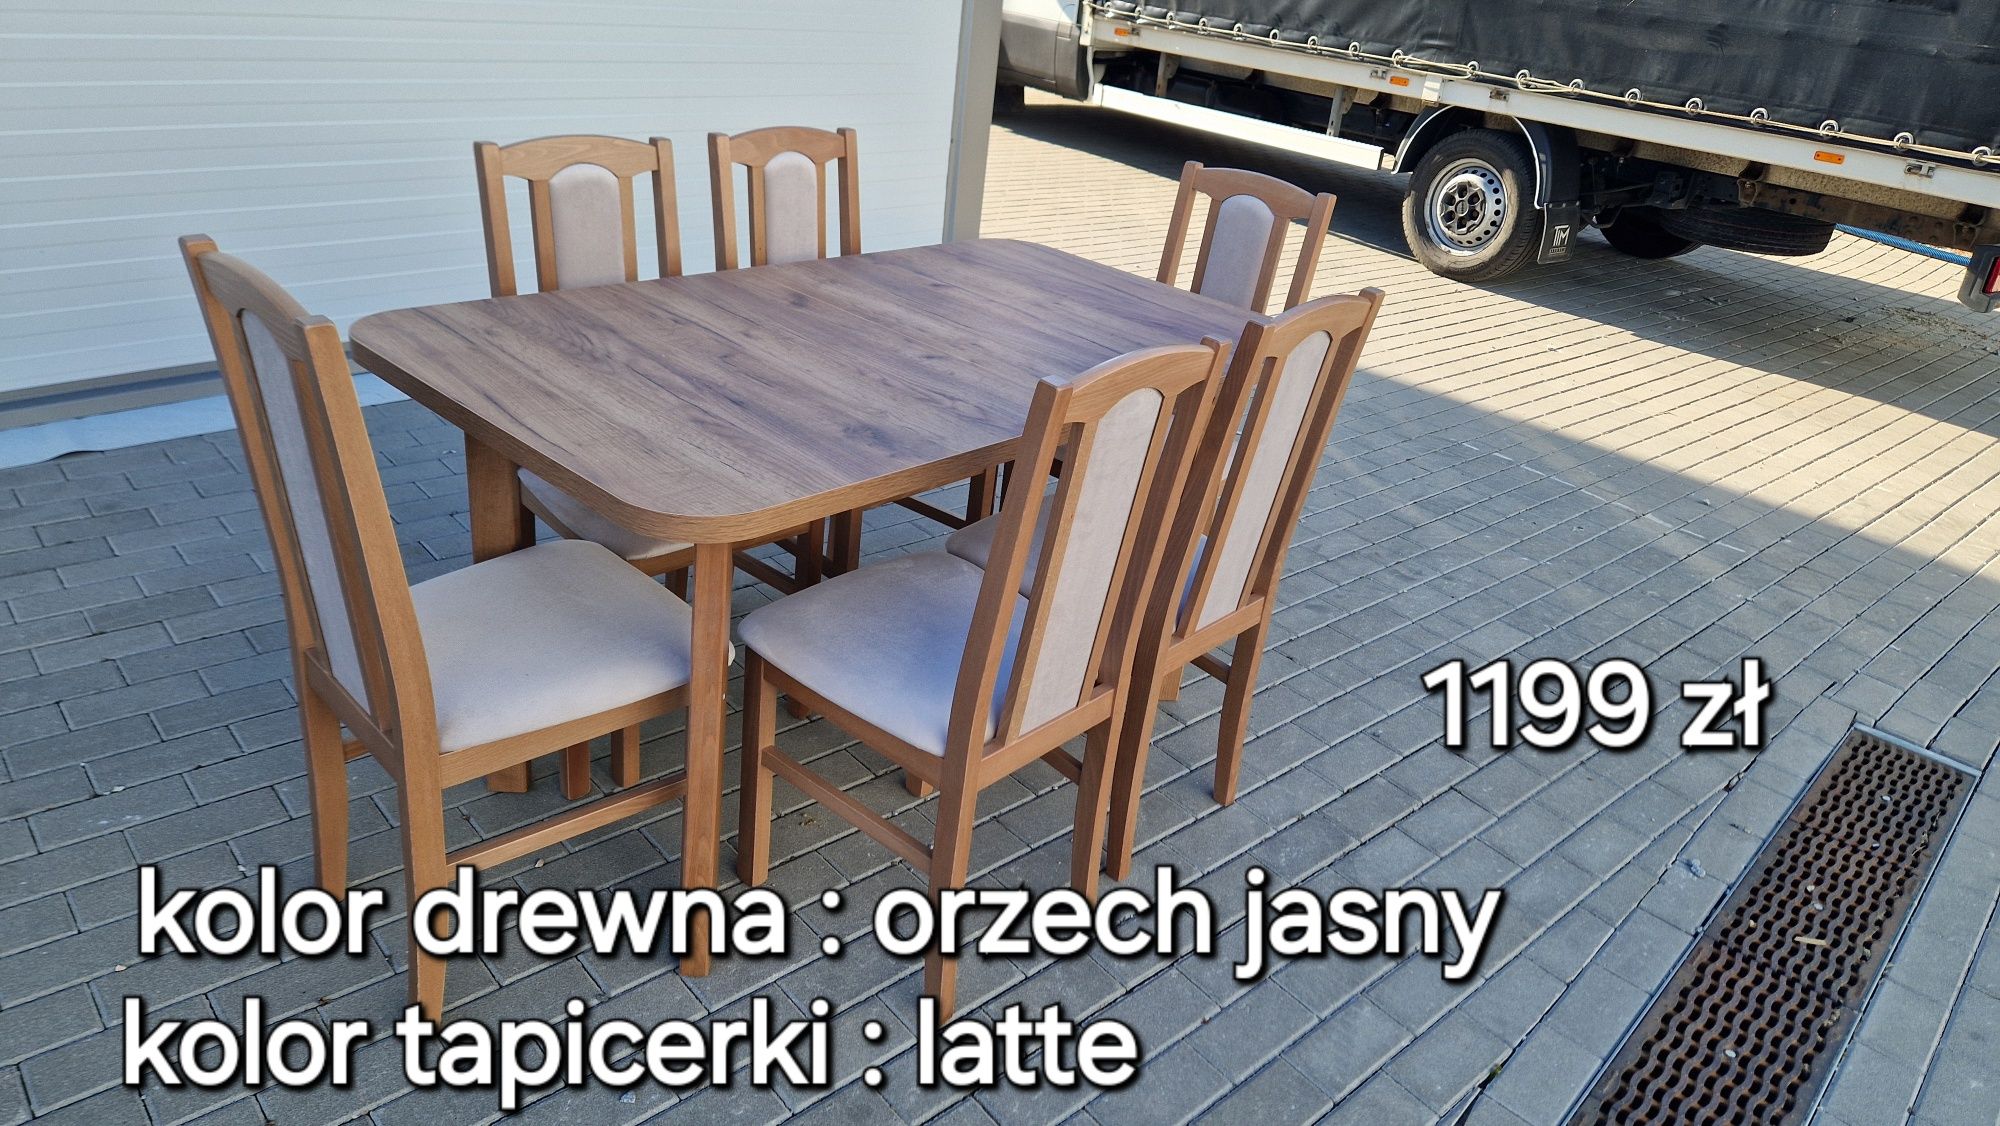 Nowe: Stół 80x140/180 + 6 krzeseł, ORZECH JASNY + LATTE, dostawa PL